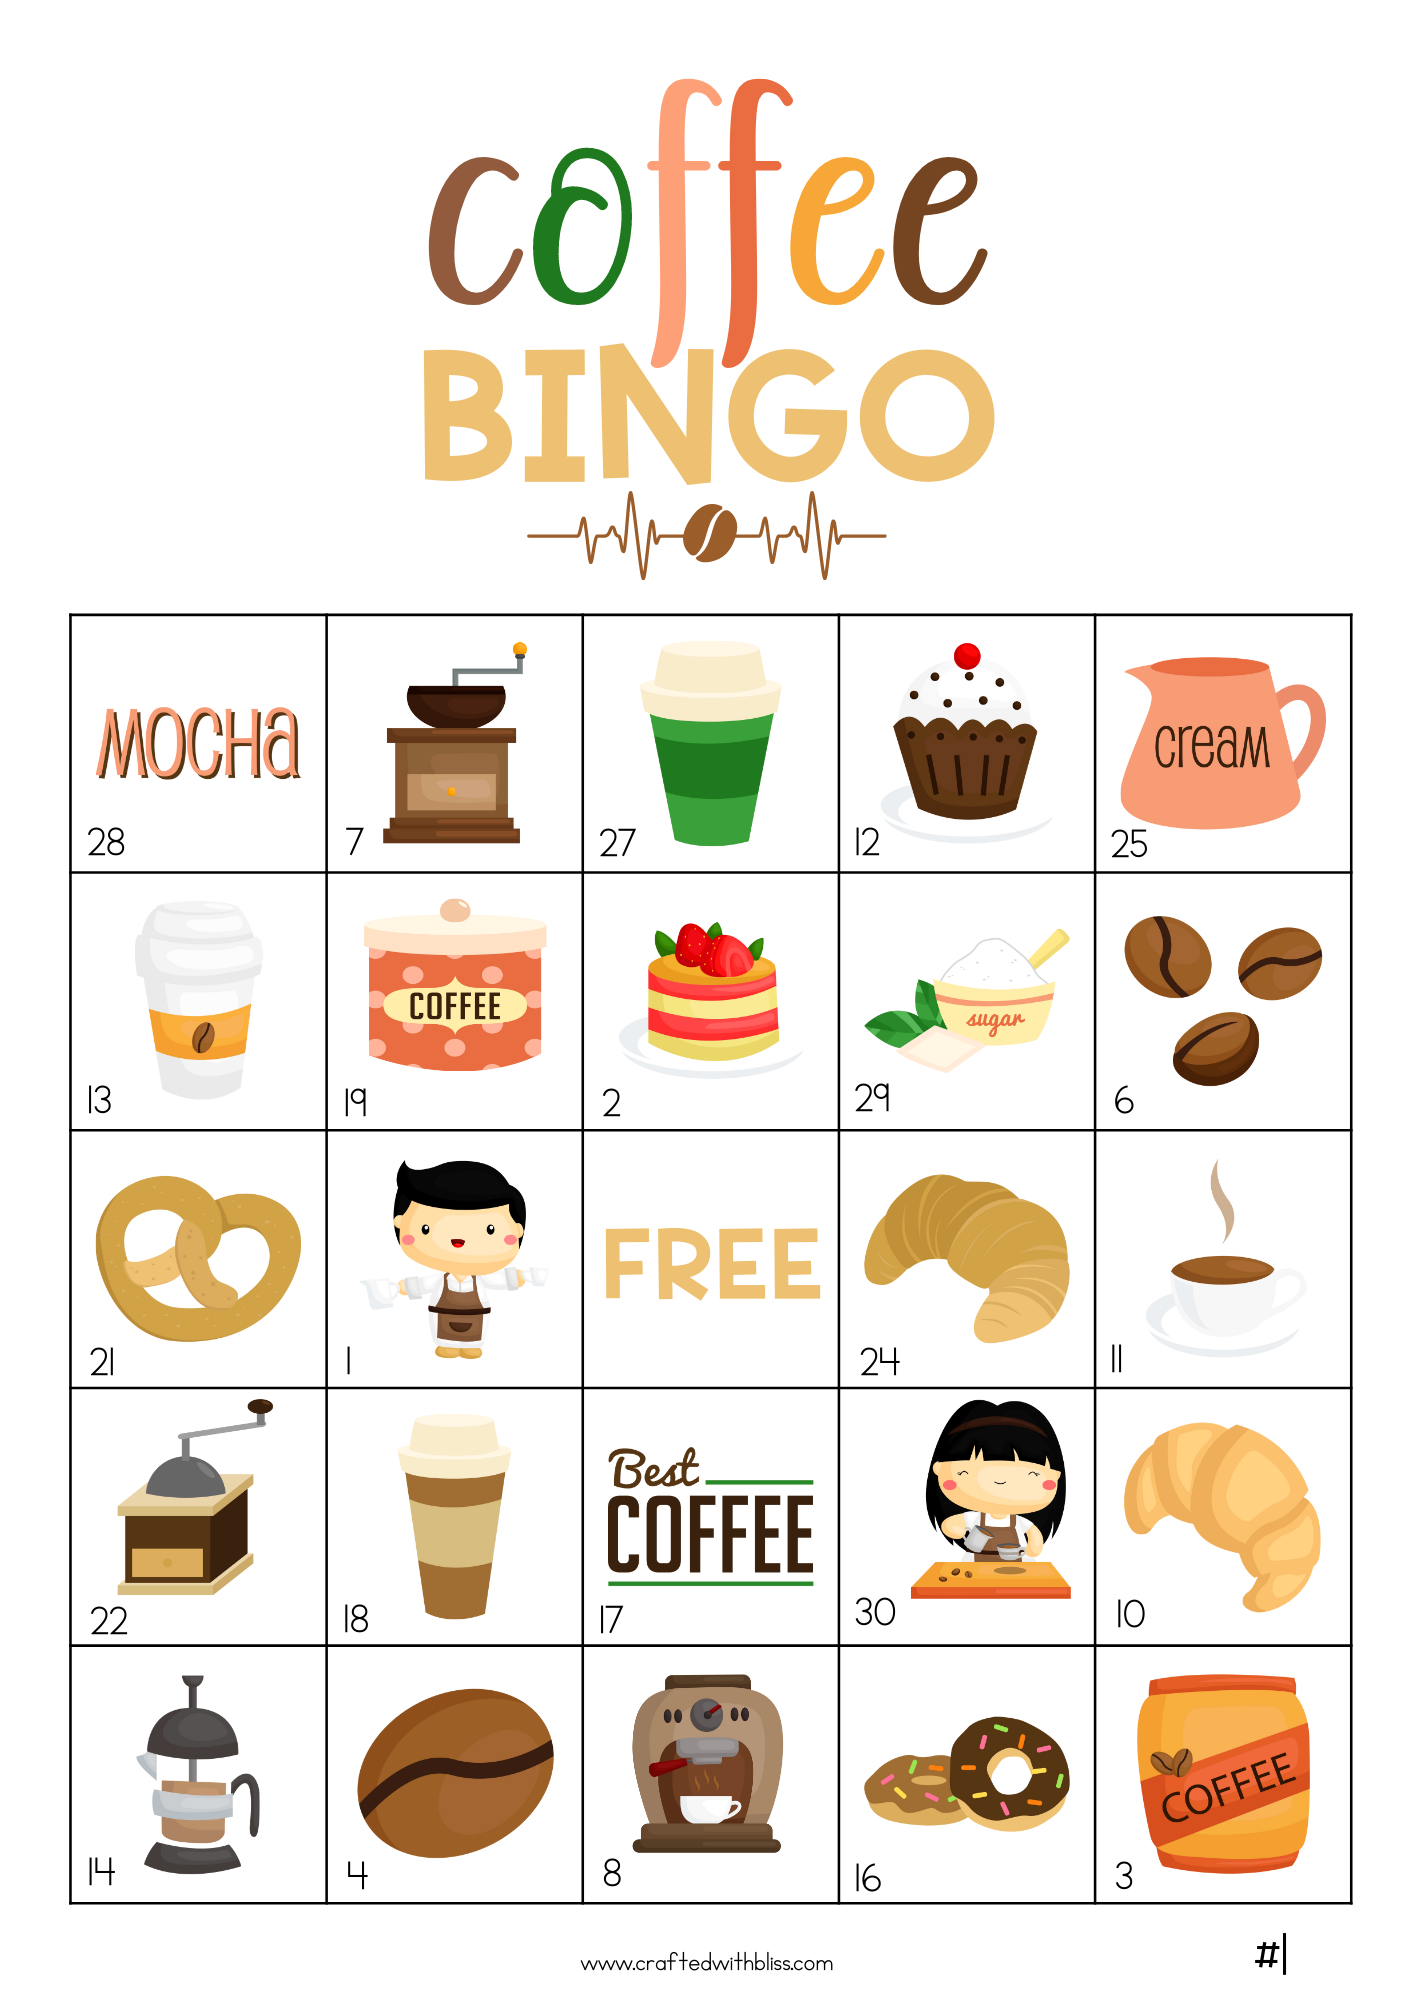 50 Coffee Bingo Cards (5x5)